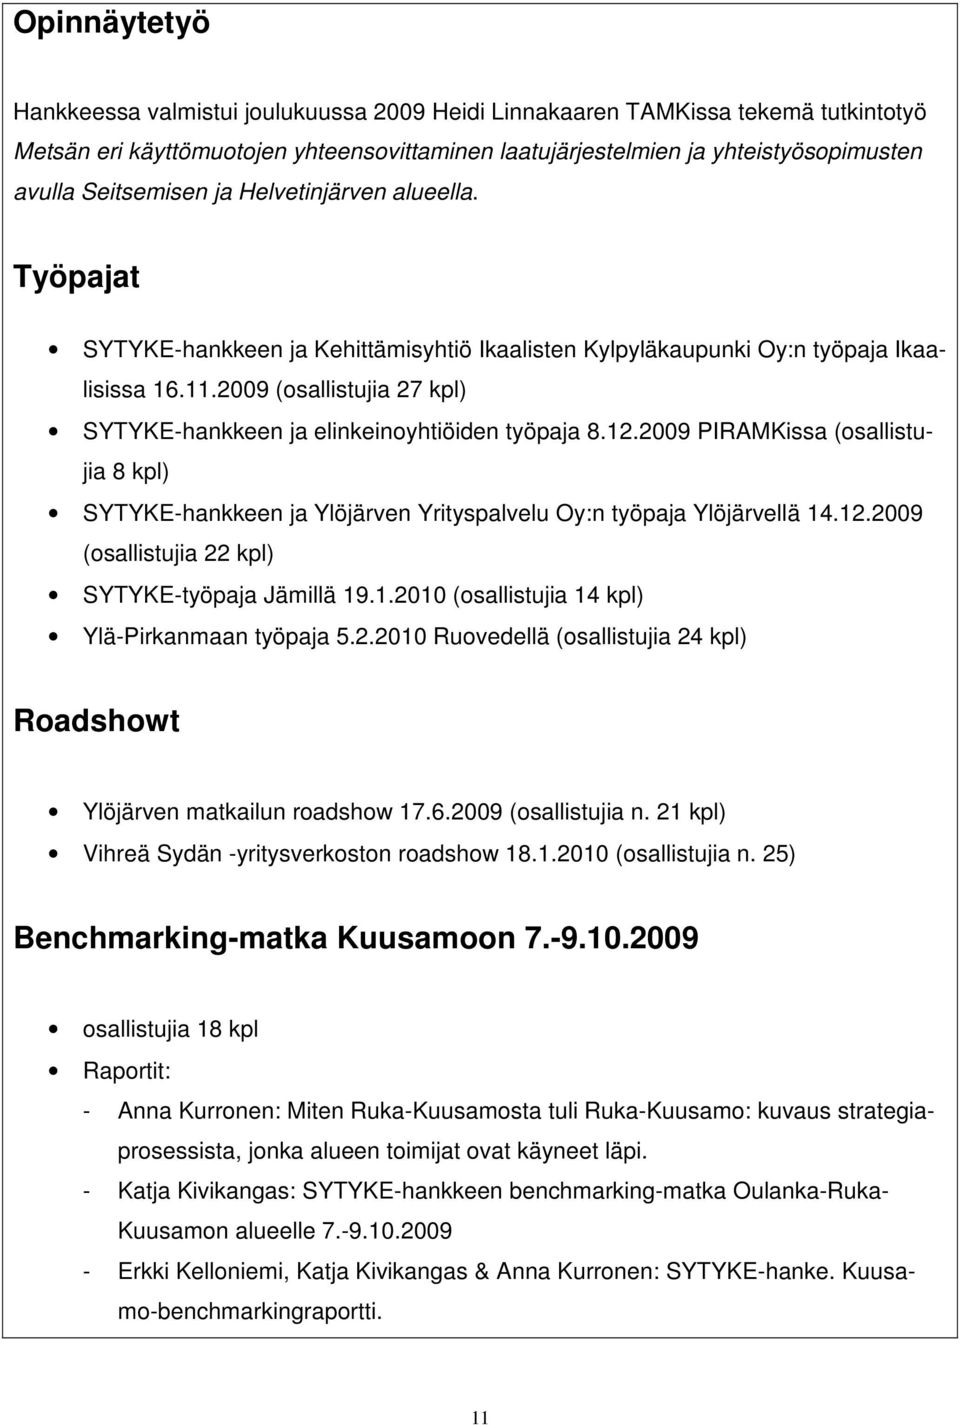 2009 (osallistujia 27 kpl) SYTYKE-hankkeen ja elinkeinoyhtiöiden työpaja 8.12.2009 PIRAMKissa (osallistujia 8 kpl) SYTYKE-hankkeen ja Ylöjärven Yrityspalvelu Oy:n työpaja Ylöjärvellä 14.12.2009 (osallistujia 22 kpl) SYTYKE-työpaja Jämillä 19.